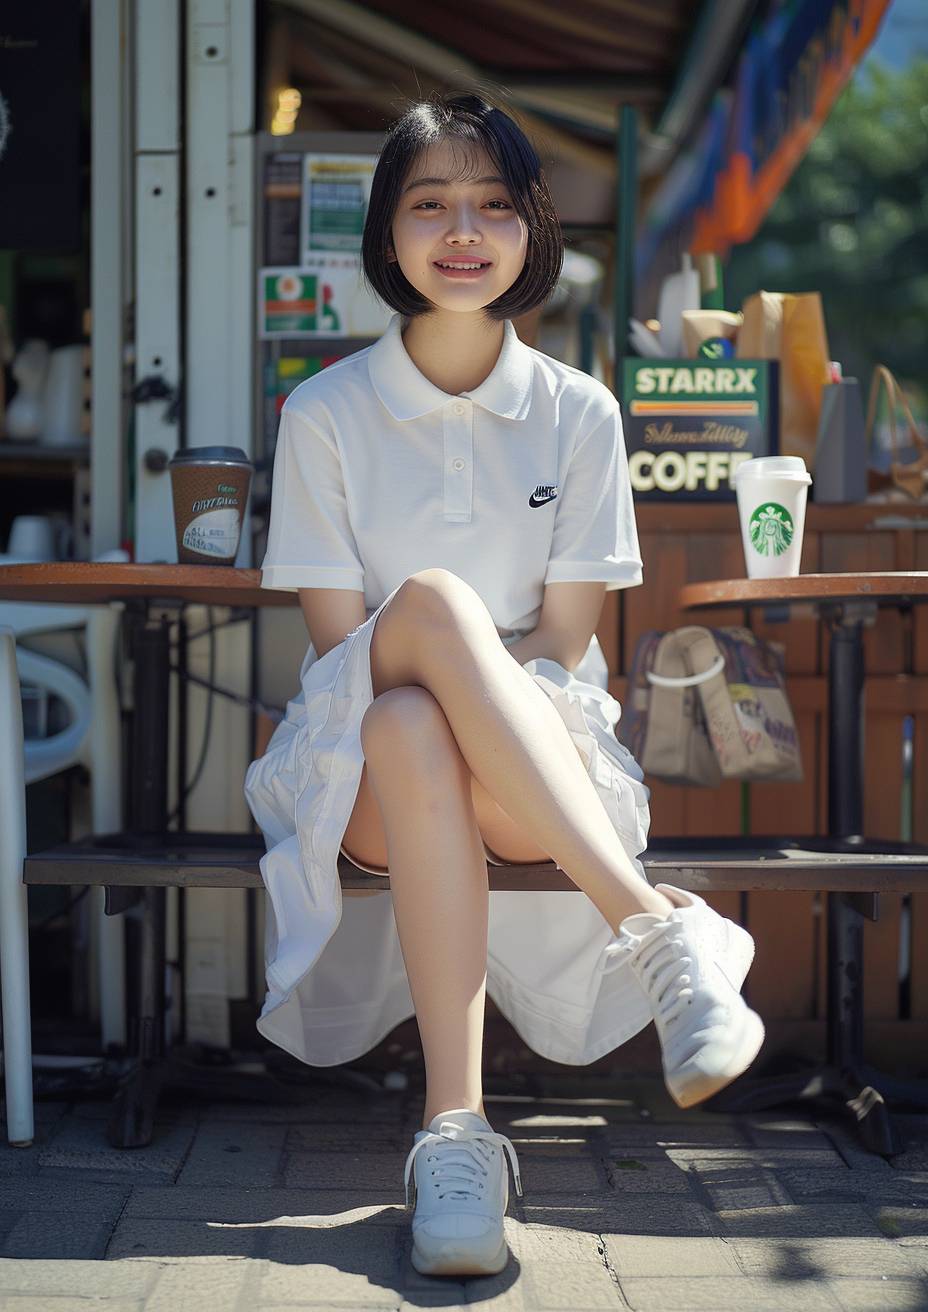 傑作、壮大なポーズ、4K、自然光、レンブラントライティング| 15歳の可愛い日本の女の子、整えられたまっすぐな黒髪、優しく微笑み、足を組んで座っている姿、彼女の足に光が差し込んでいます| スポーティなファッションを着ており、ナイキのロゴマークとナイキのスニーカーが入った白いプレーンなポロロングスポーツドレスを着用していて、席の横にスターバックスのコーヒーカップが置かれています| カフェスタンドの前の席に座っており、夏のニューヨーク市、正午のダッチアングルでSony a7R IVとFujicolor Superia X-TRA 400フィルムシミュレーションを使用して撮影されています--ロゴマーク、ロゴタイプ、テキスト、看板、モノクローム、レトロなどの要素なし--アスペクト比は5：7--スタイルは未加工--スタイライズ120--v 6.0